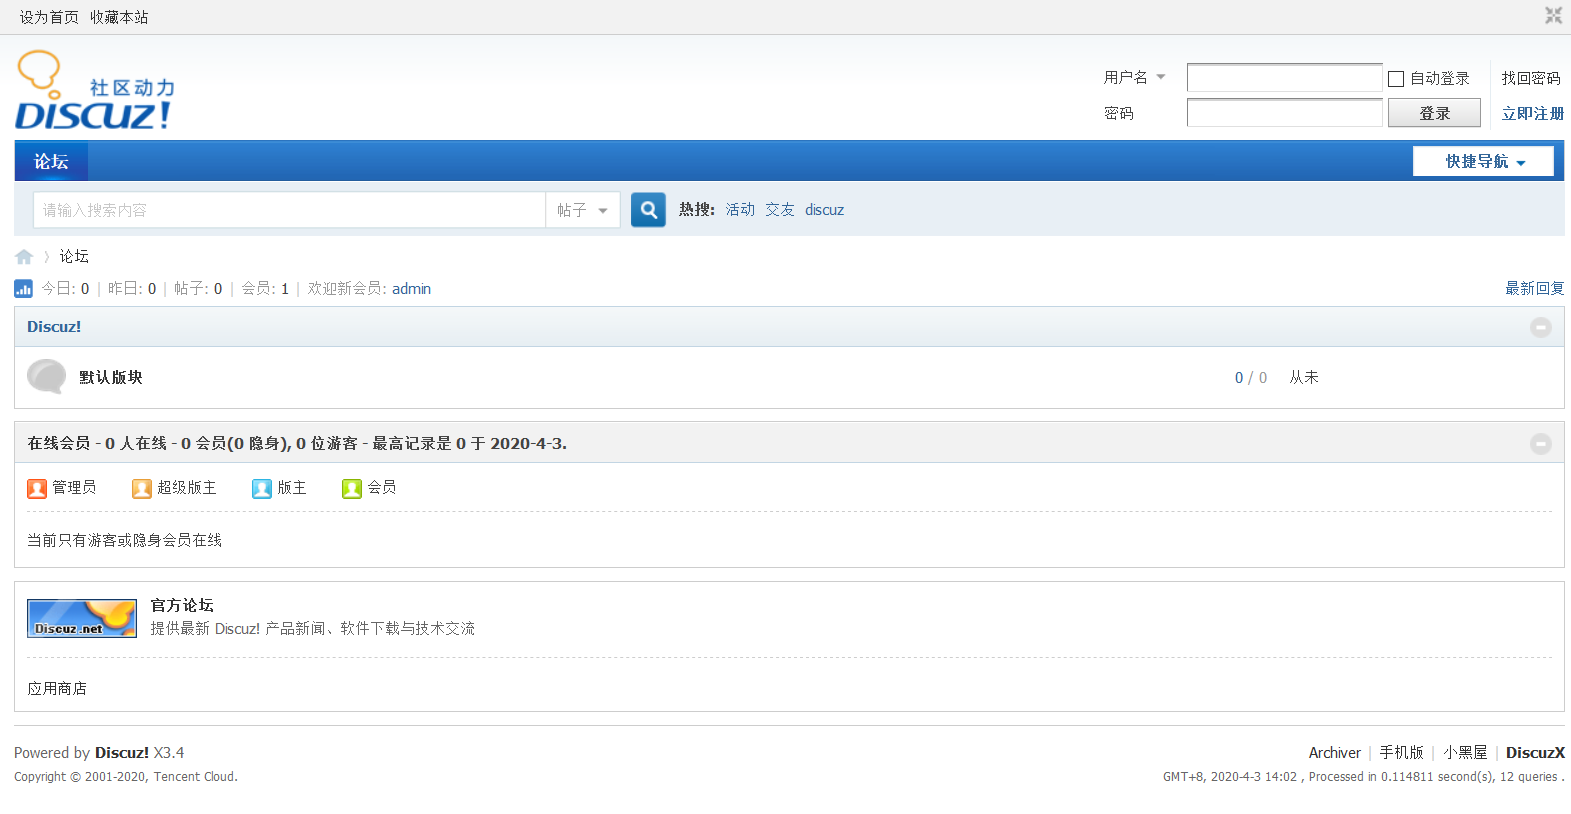 Forum php dl. Boyxzeed2 similar. Boyxzeed Discuz. Форум php. Boyxzeed Chinese.